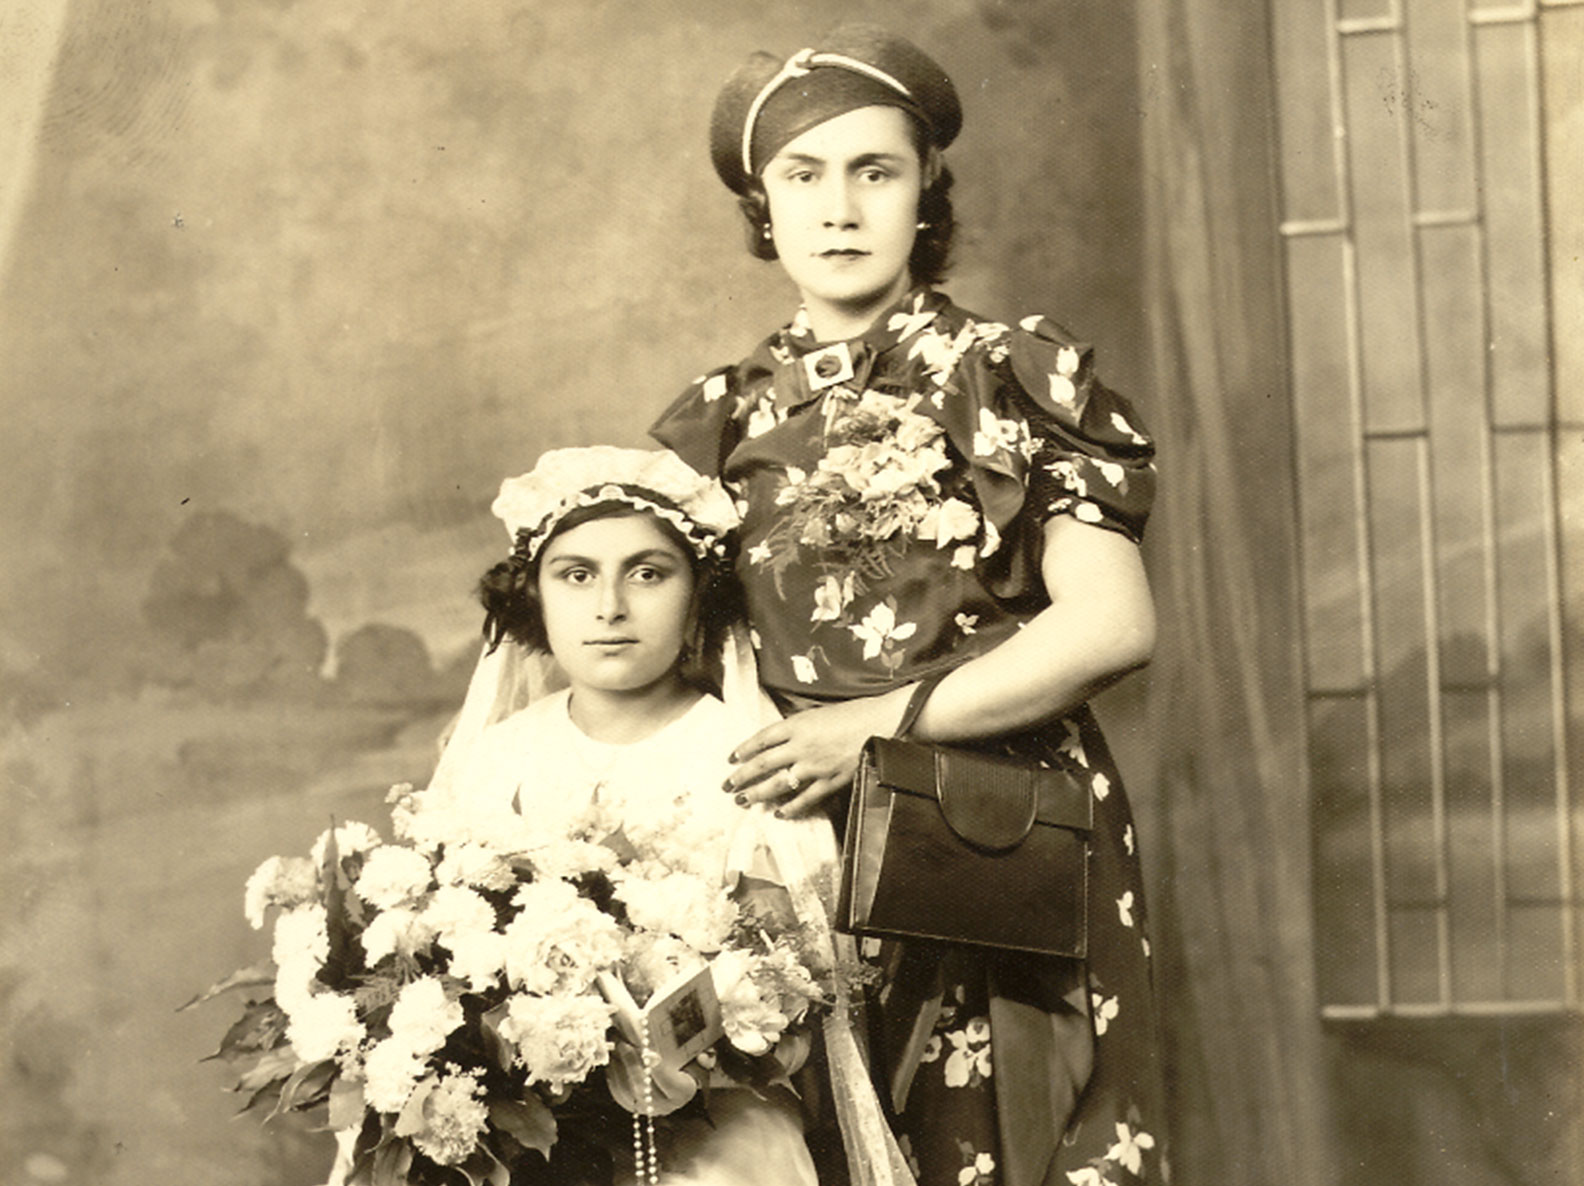 Josephoine Baldizzi confirmation photo circa 1925